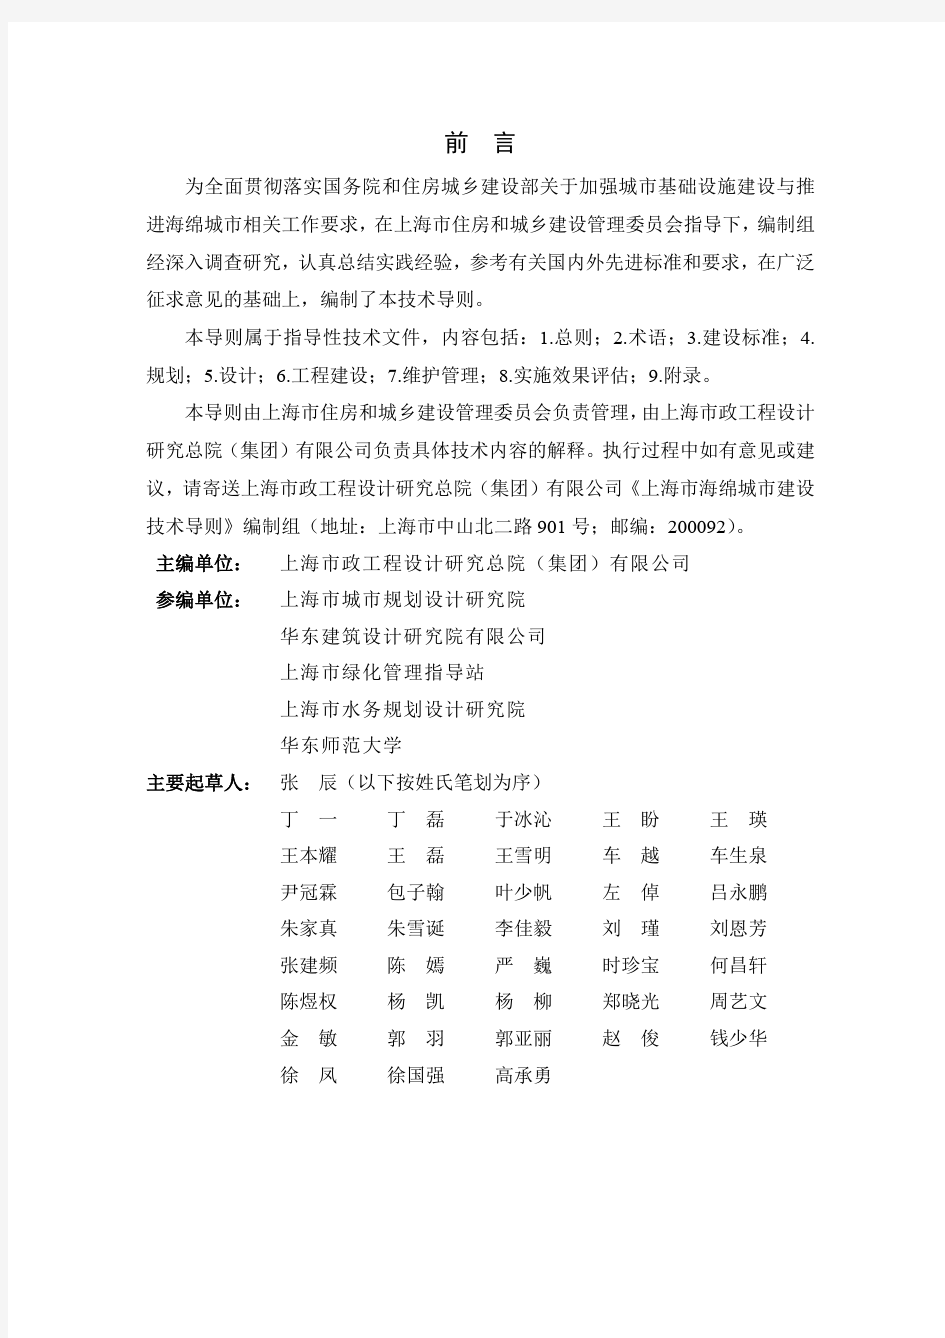 上海市海绵城市建设技术导则-正式发布版-2016.9.18